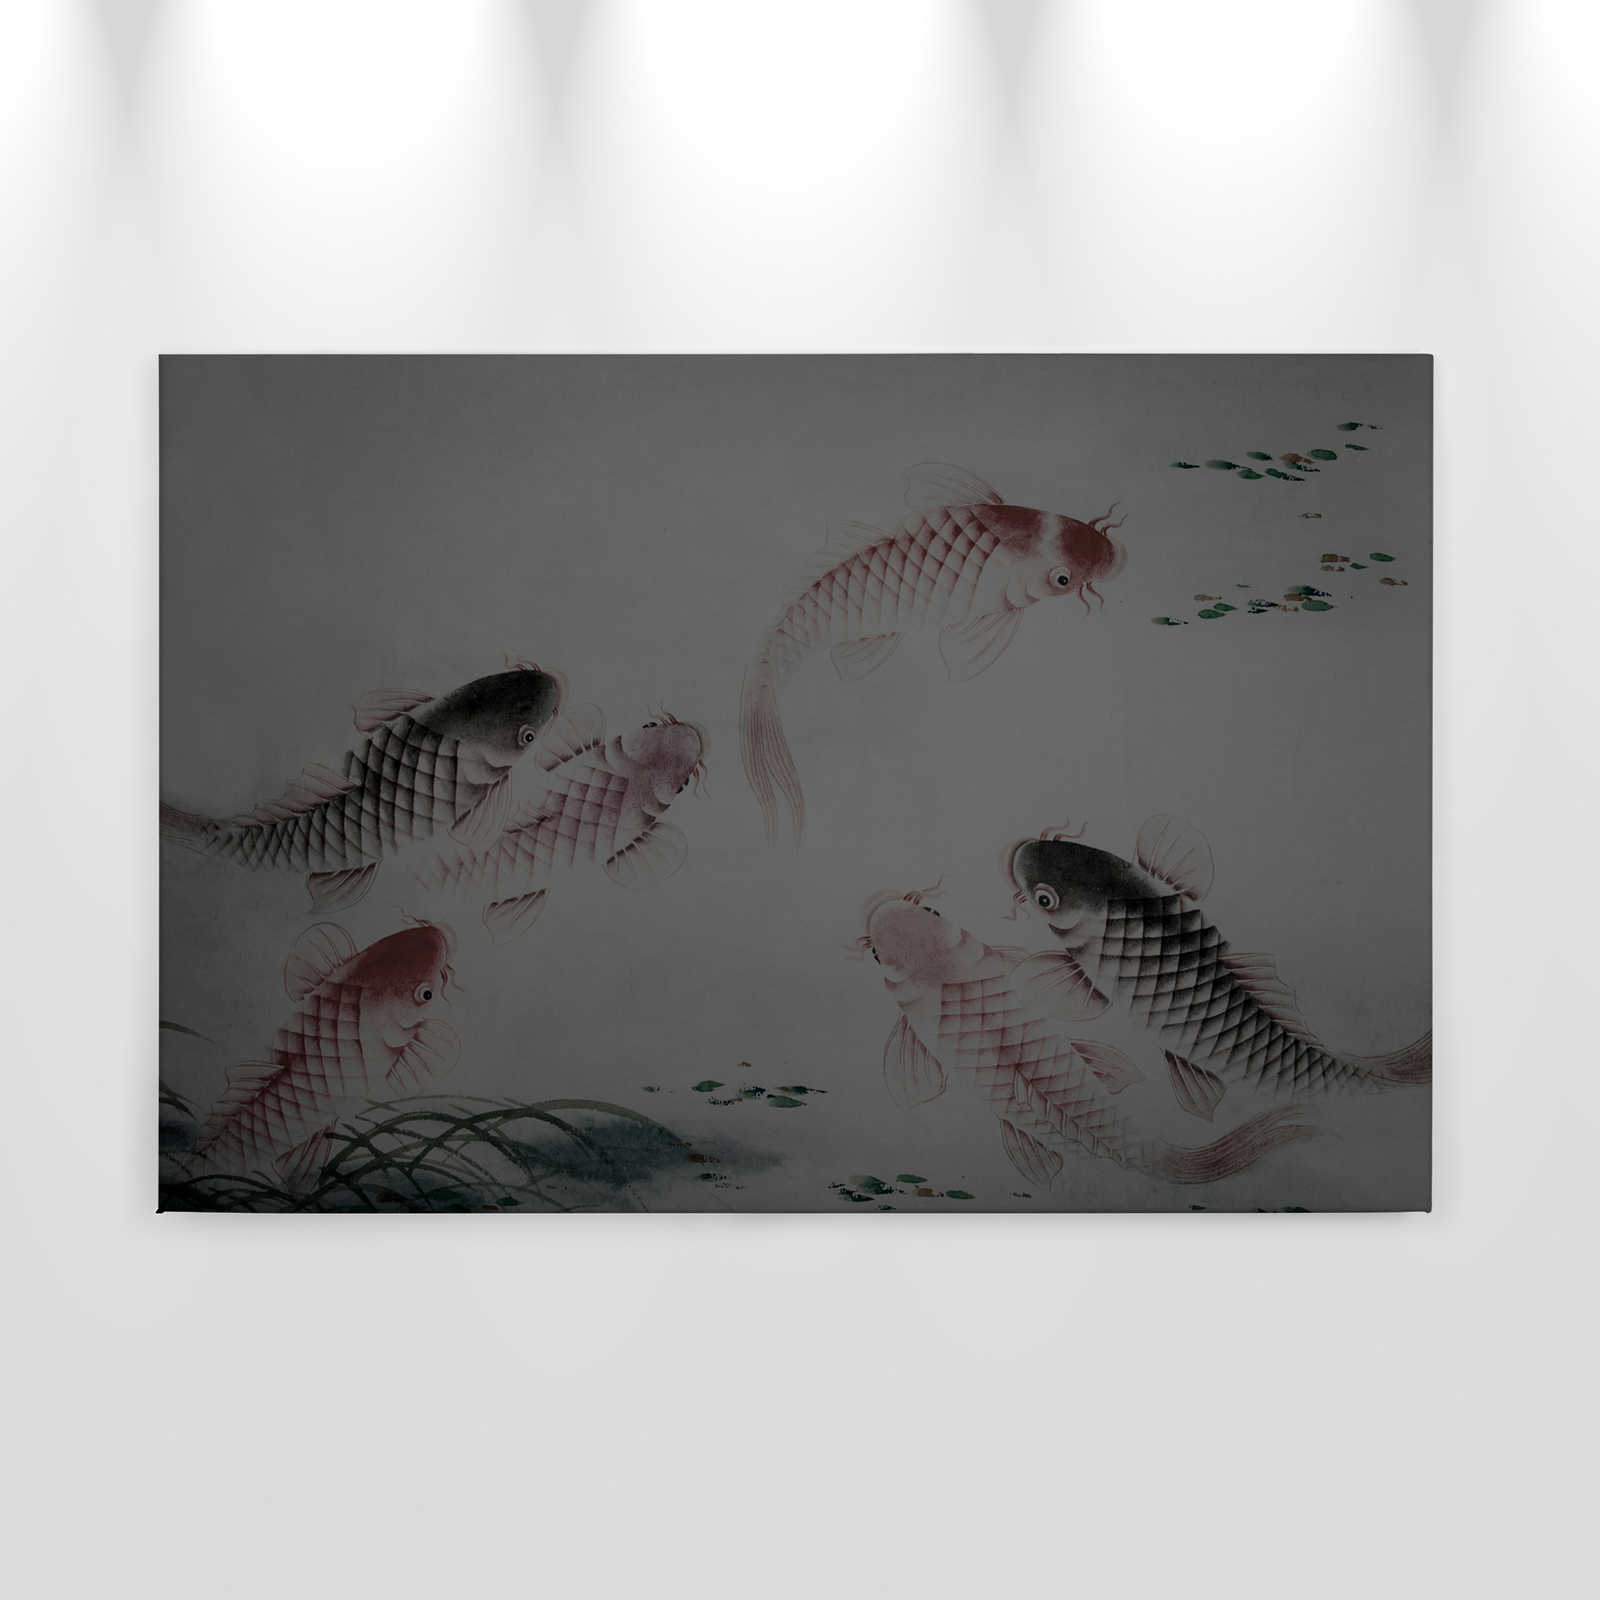             Tableau toile Asia Style avec étang de Koi | gris - 0,90 m x 0,60 m
        